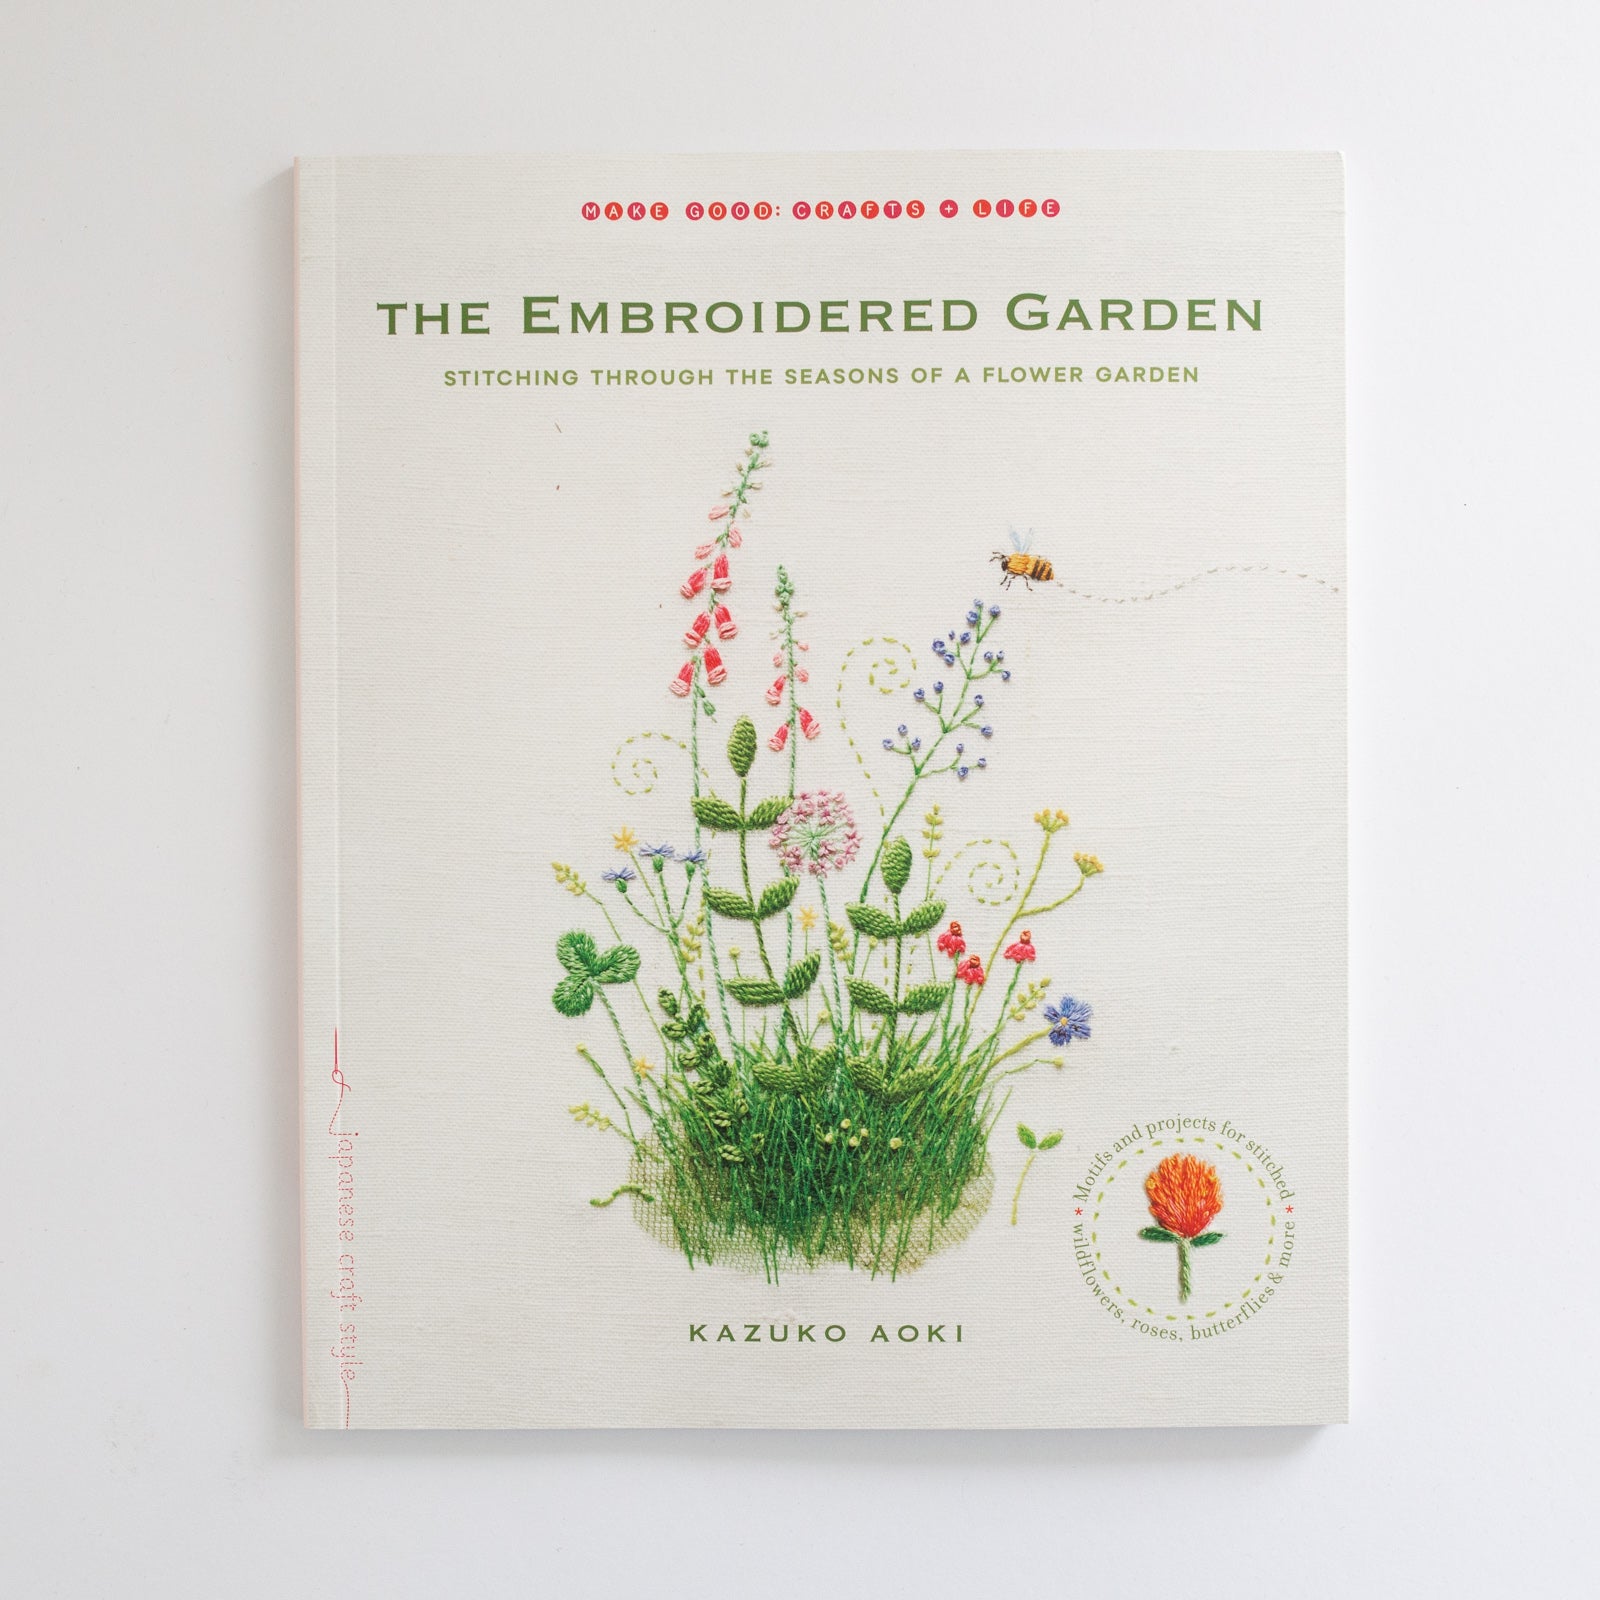 The Embroidered Garden' by Kazuko Aoki